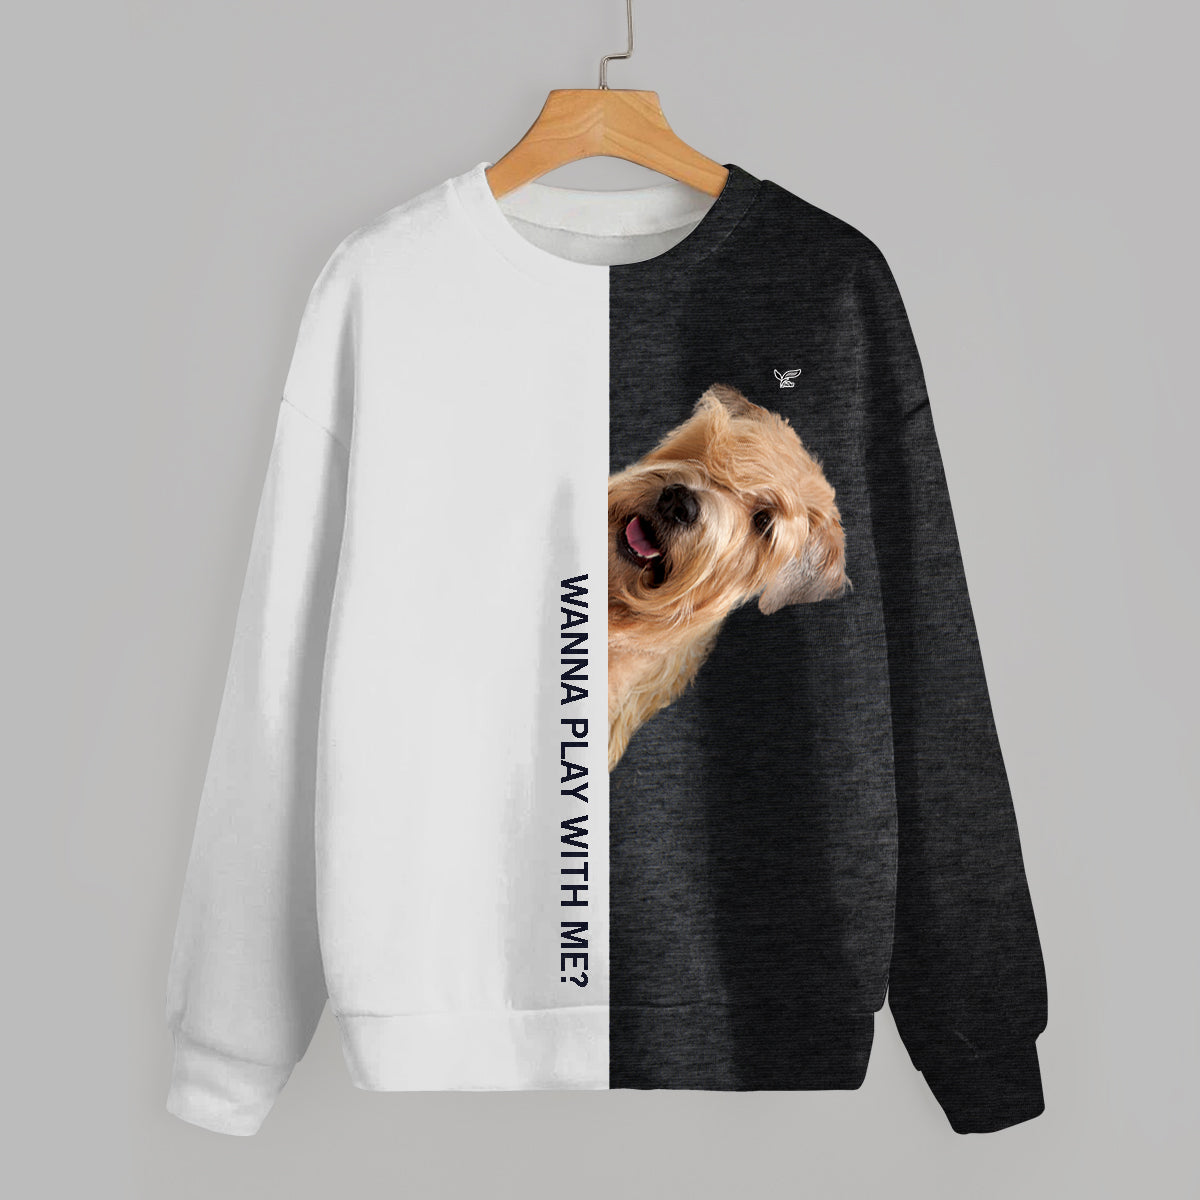 Lustige glückliche Zeit - Wheaten Terrier Sweatshirt V1